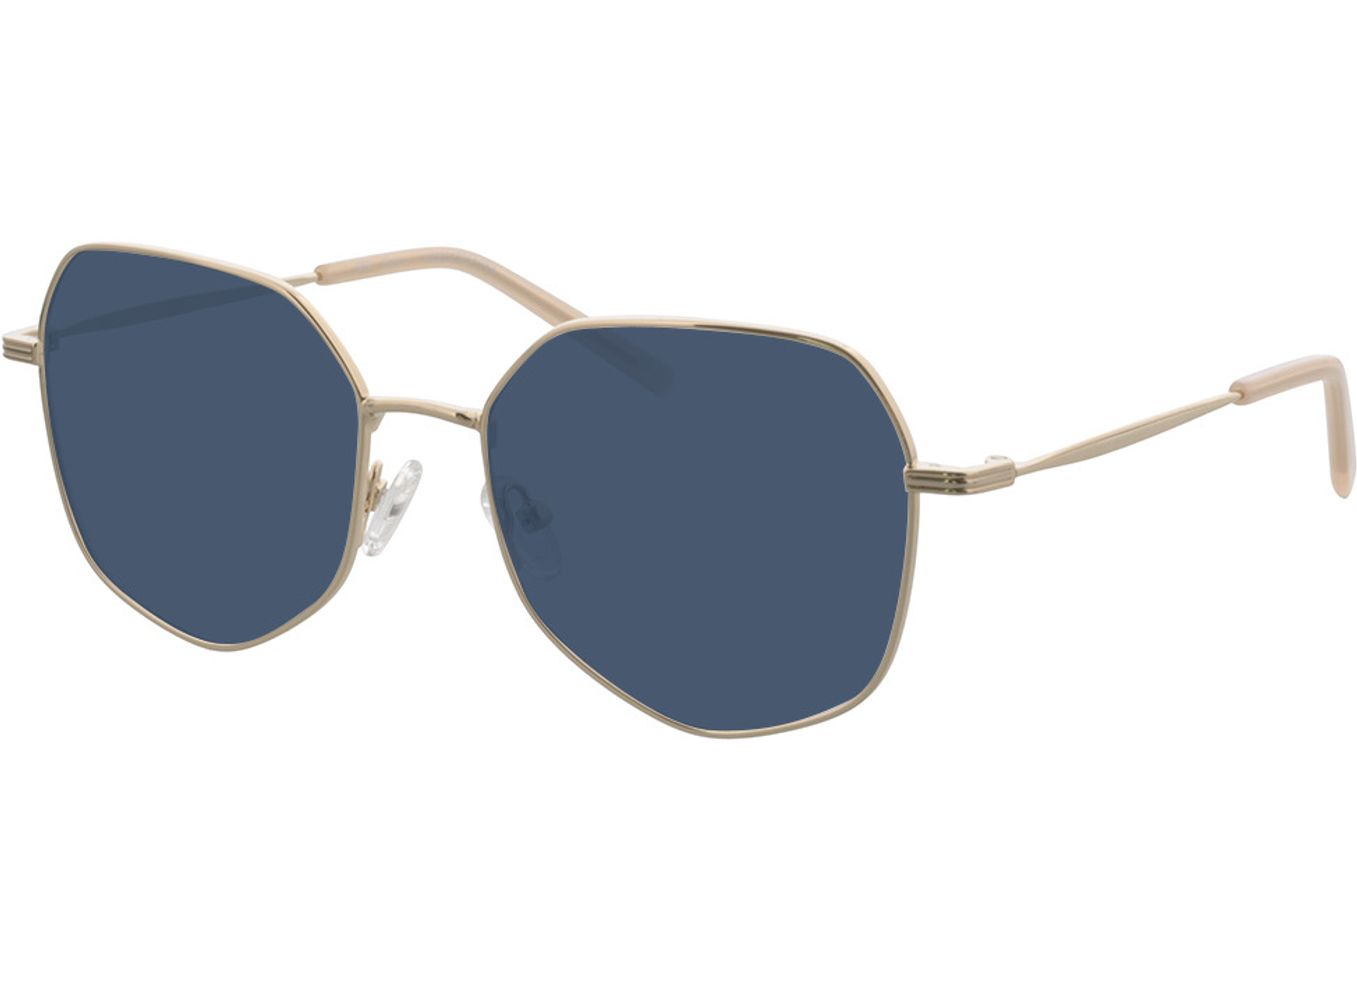 Blair - gold Sonnenbrille ohne Sehstärke, Vollrand, geometric von Brille24 Collection